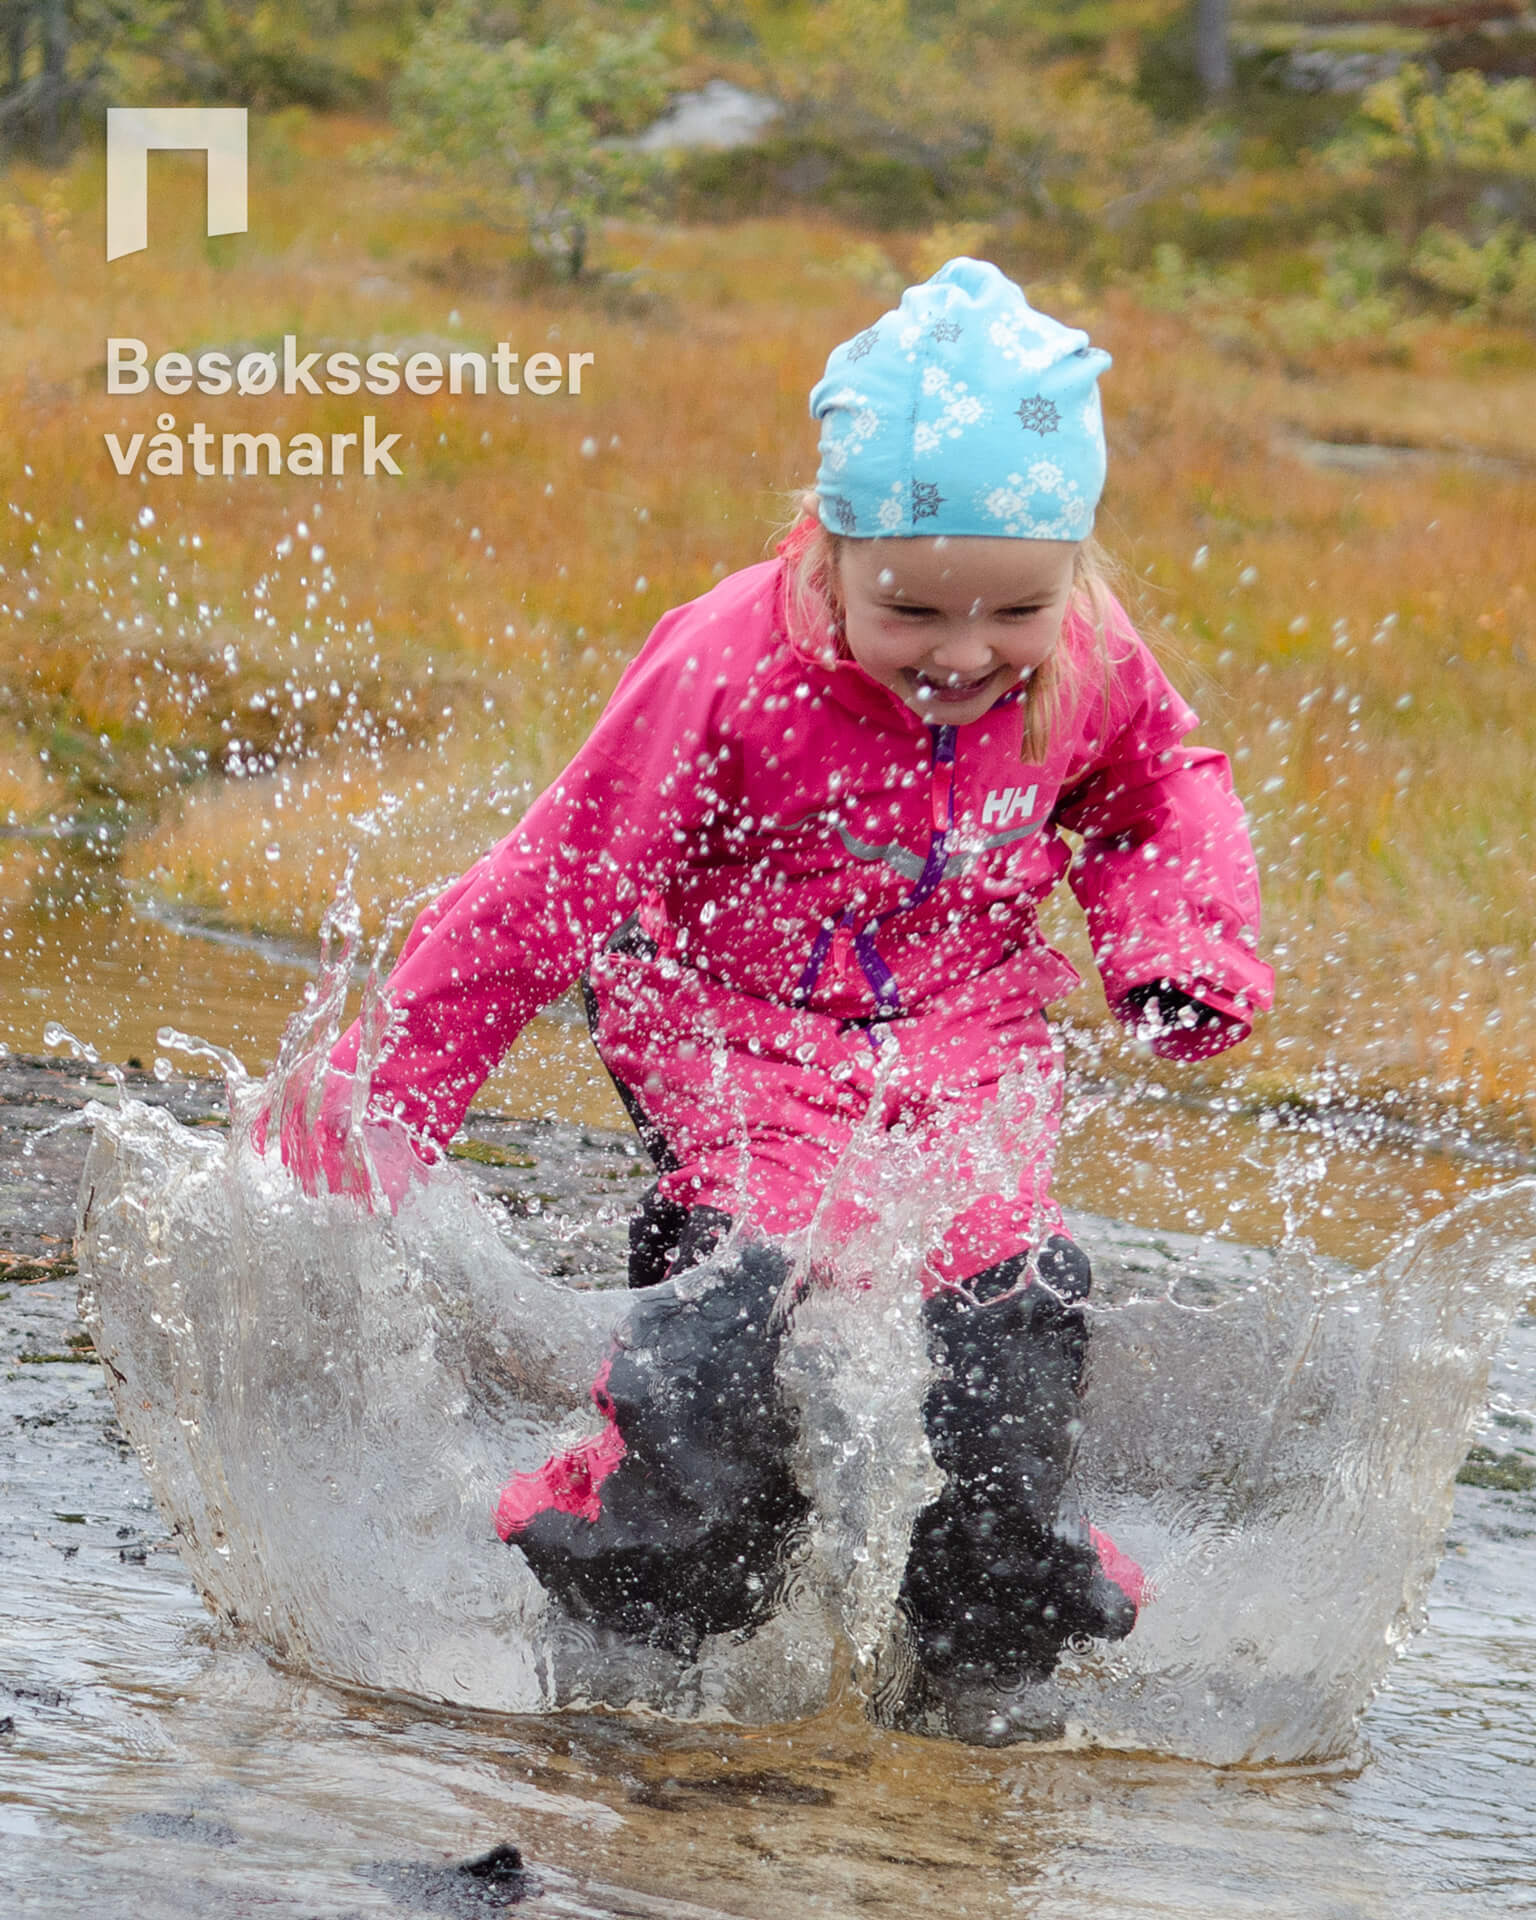 Barn som hopper i vann. Foto: Birgit Brosø